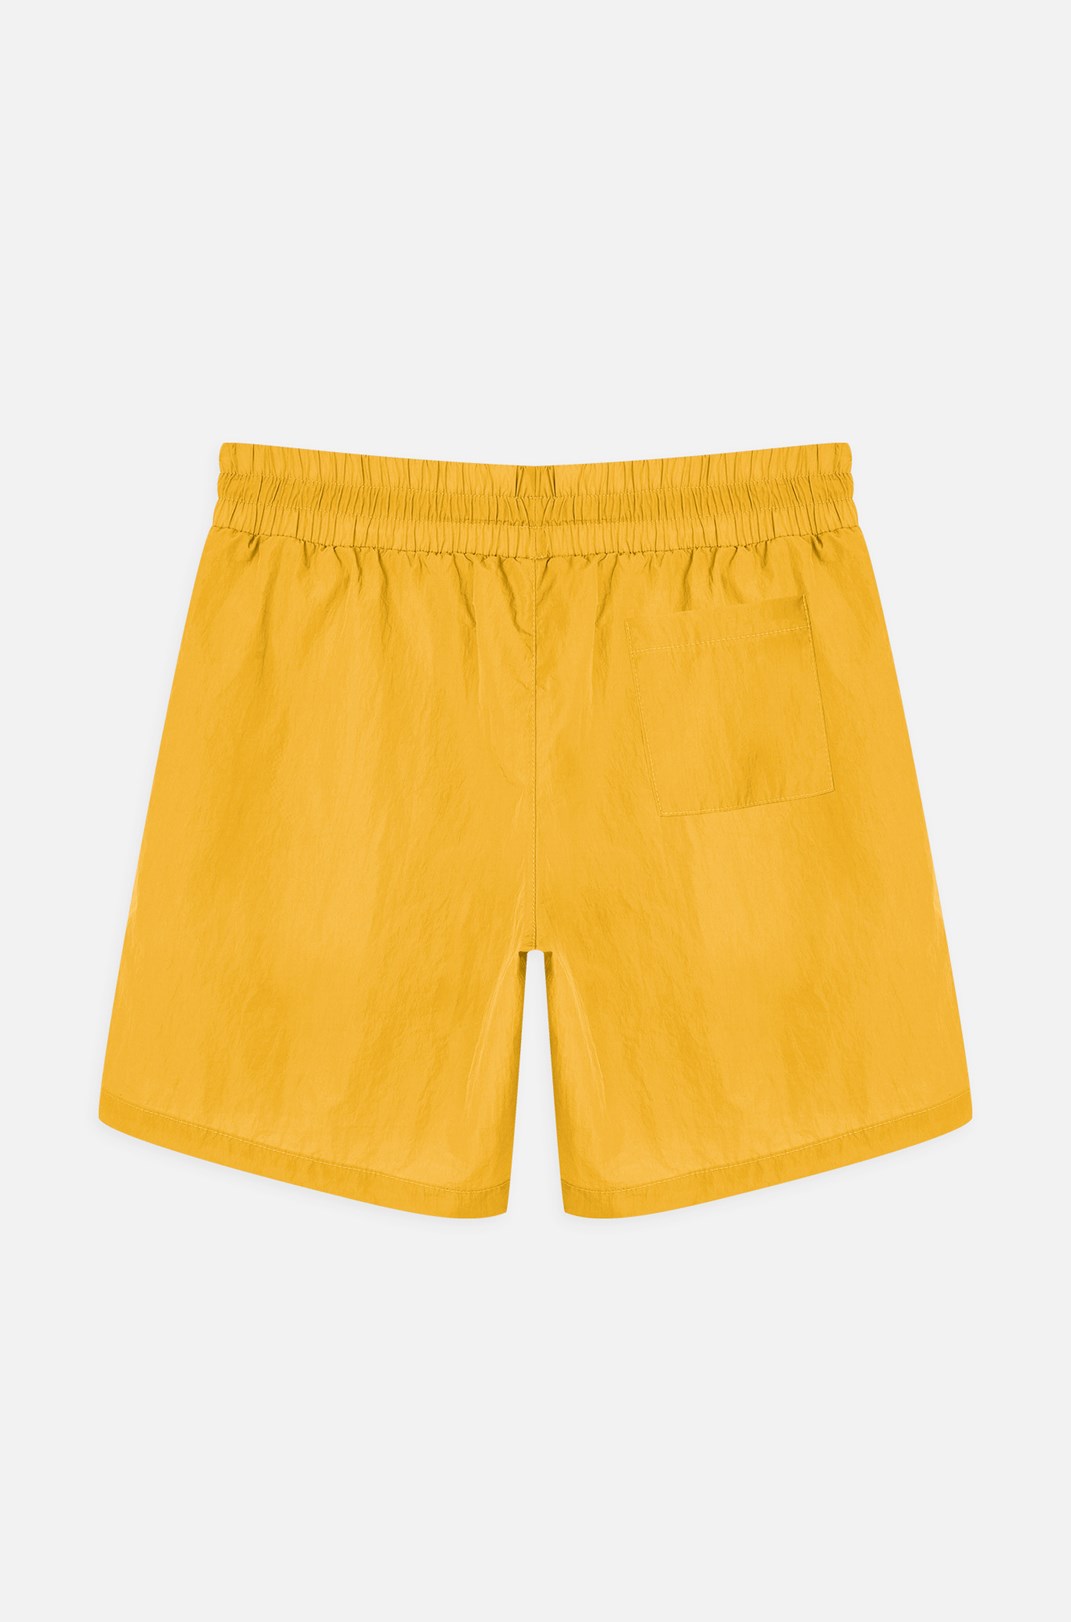 Shorts Approve Basic Amarelo Amarelo